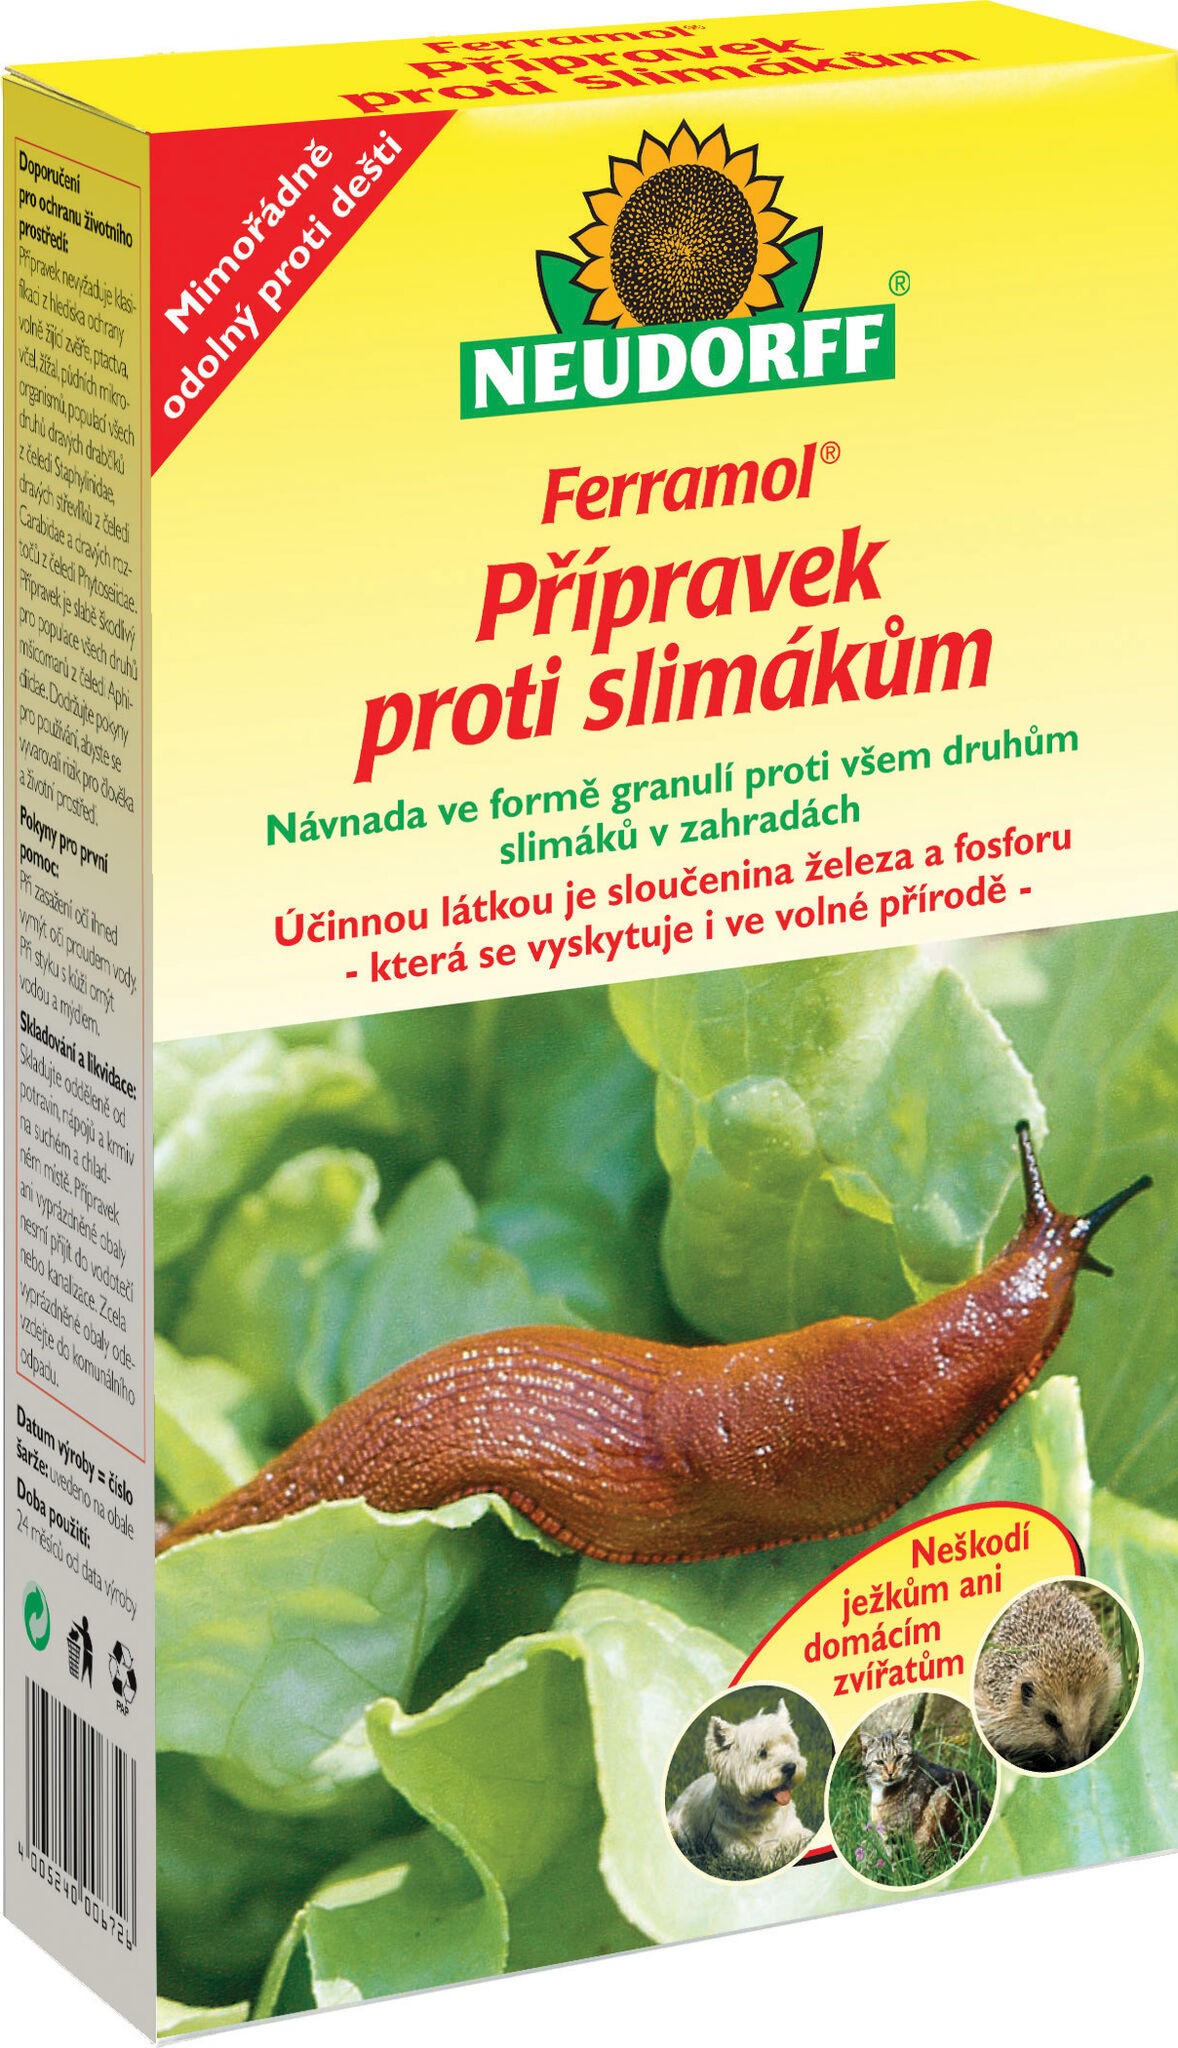 Insekticid Agro Ferramol přípravek proti slimákům 1 kg Ferramol 007238